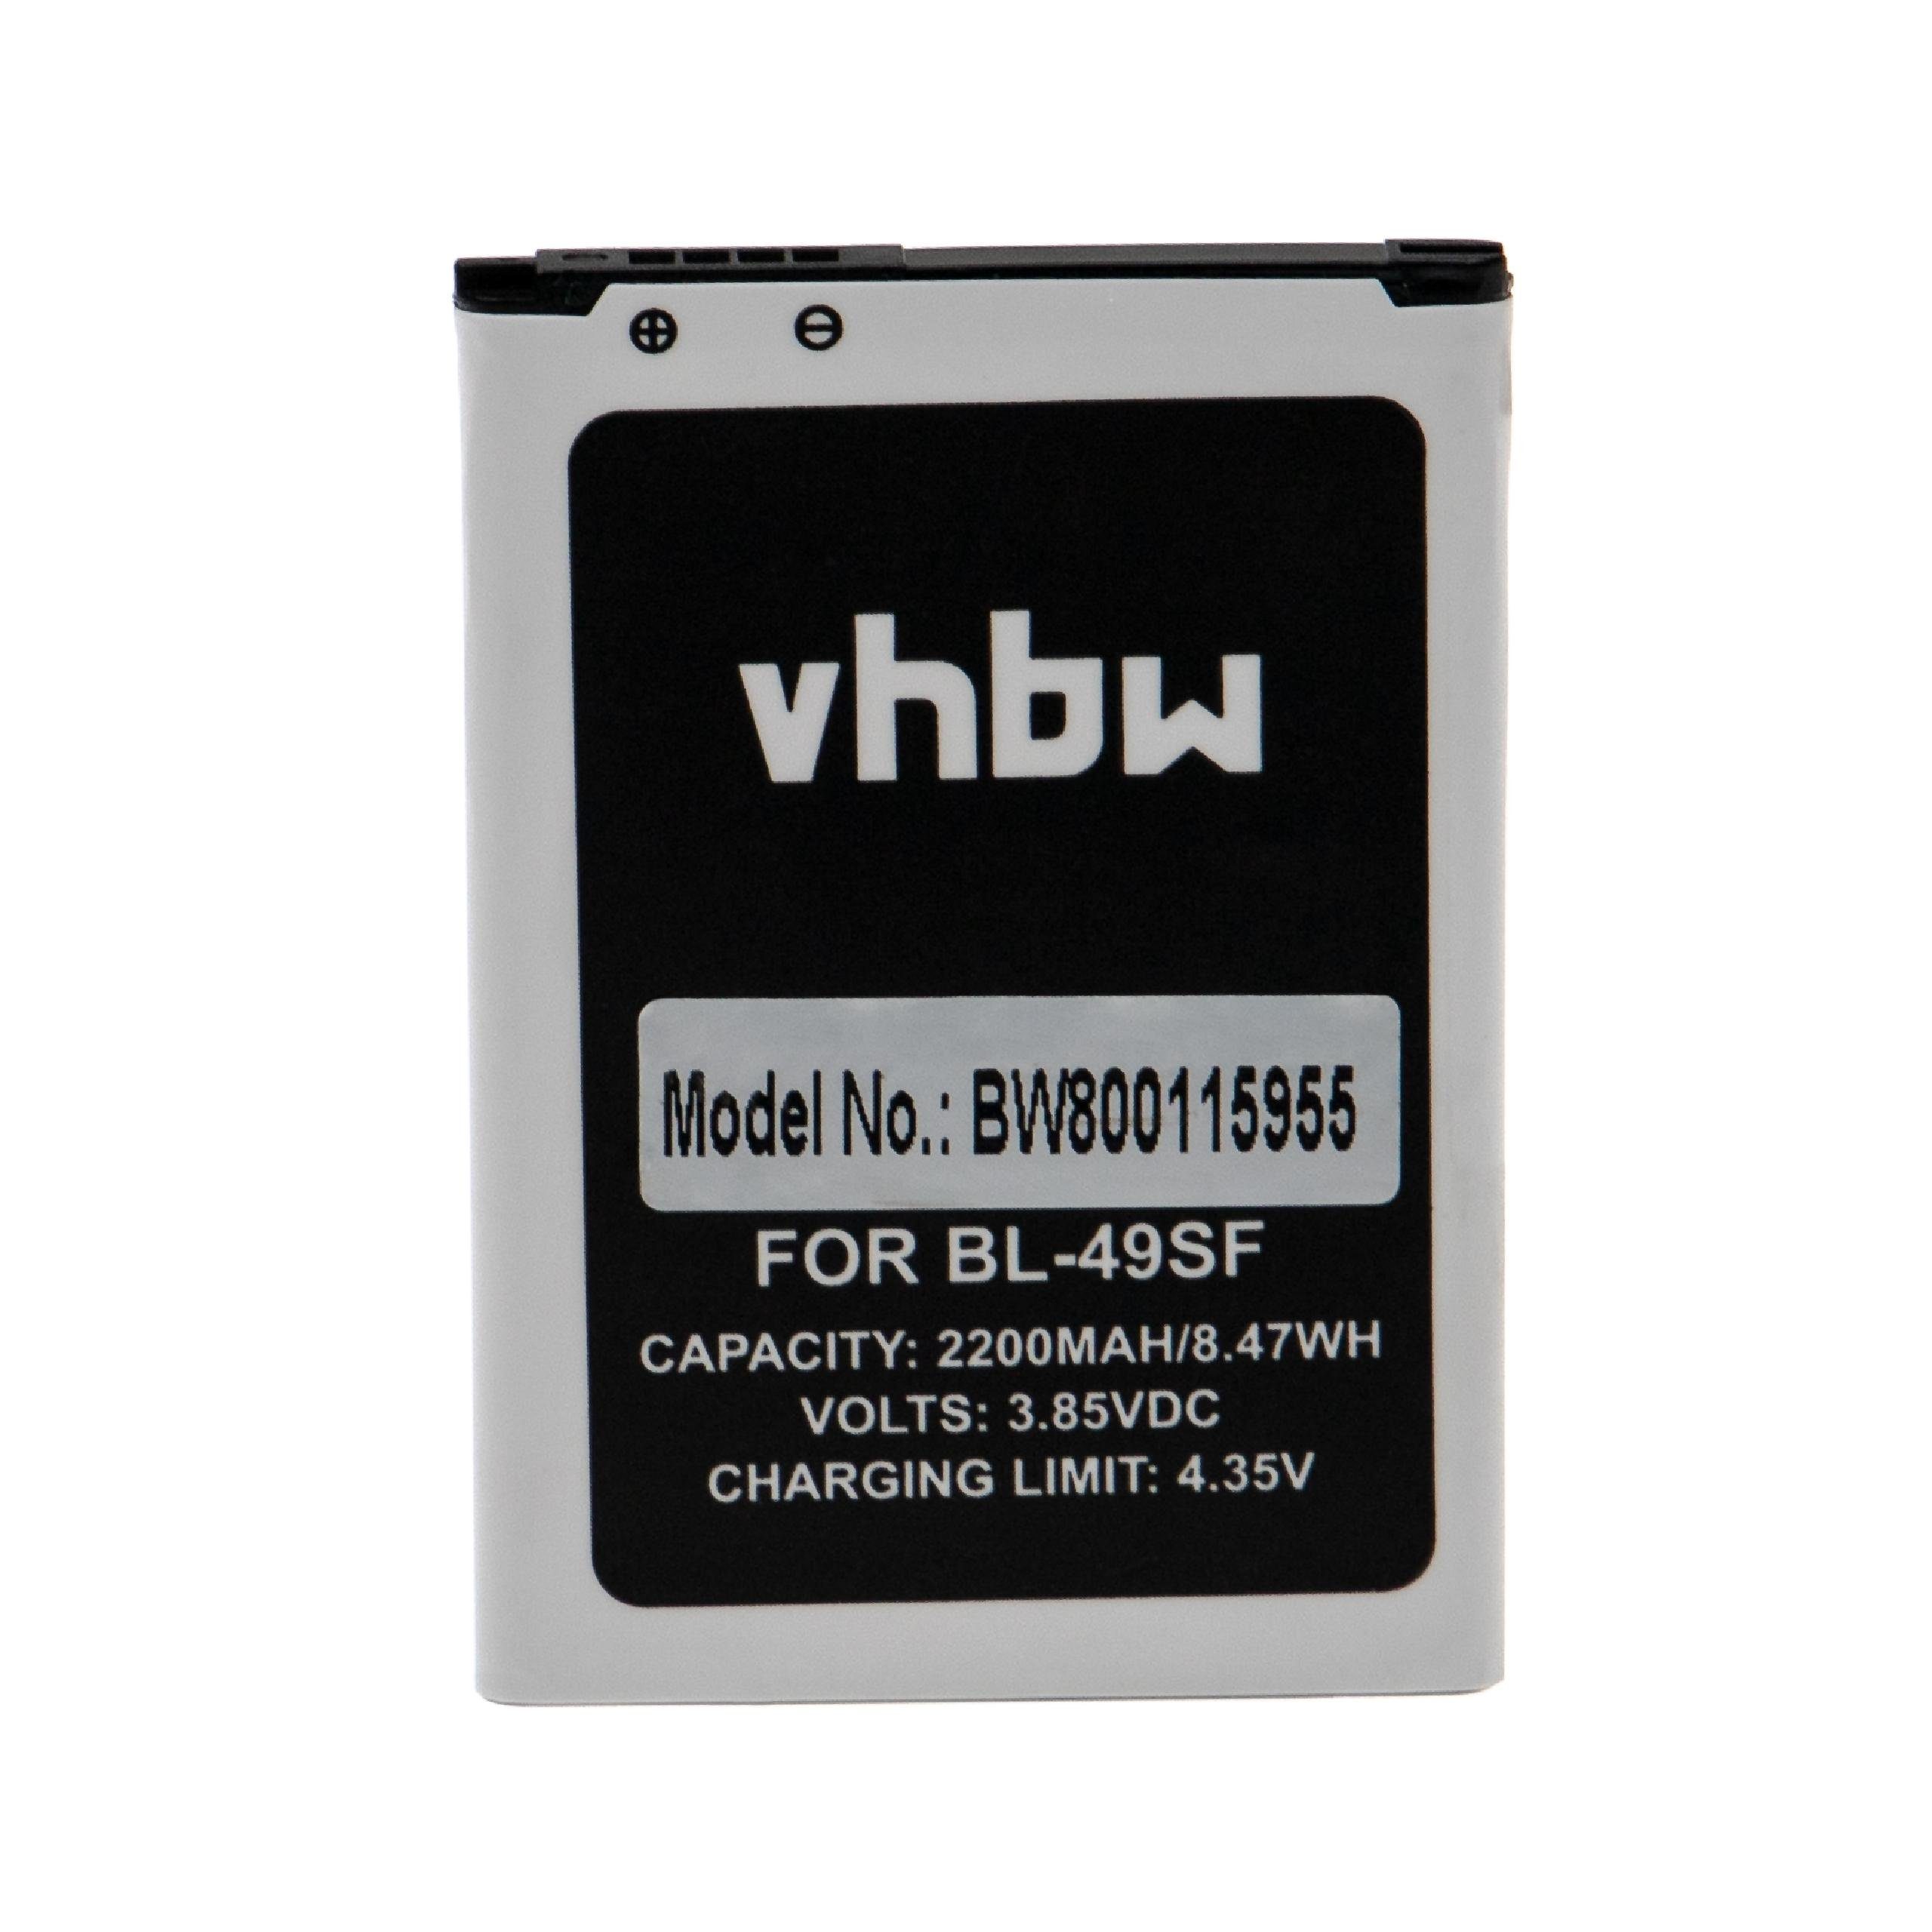 vhbw kompatibel mit LG H735L, H735T, H735, H736P, H735TR, H736 Smartphone-Akku Li-Ion 2200 mAh (3,85 V)